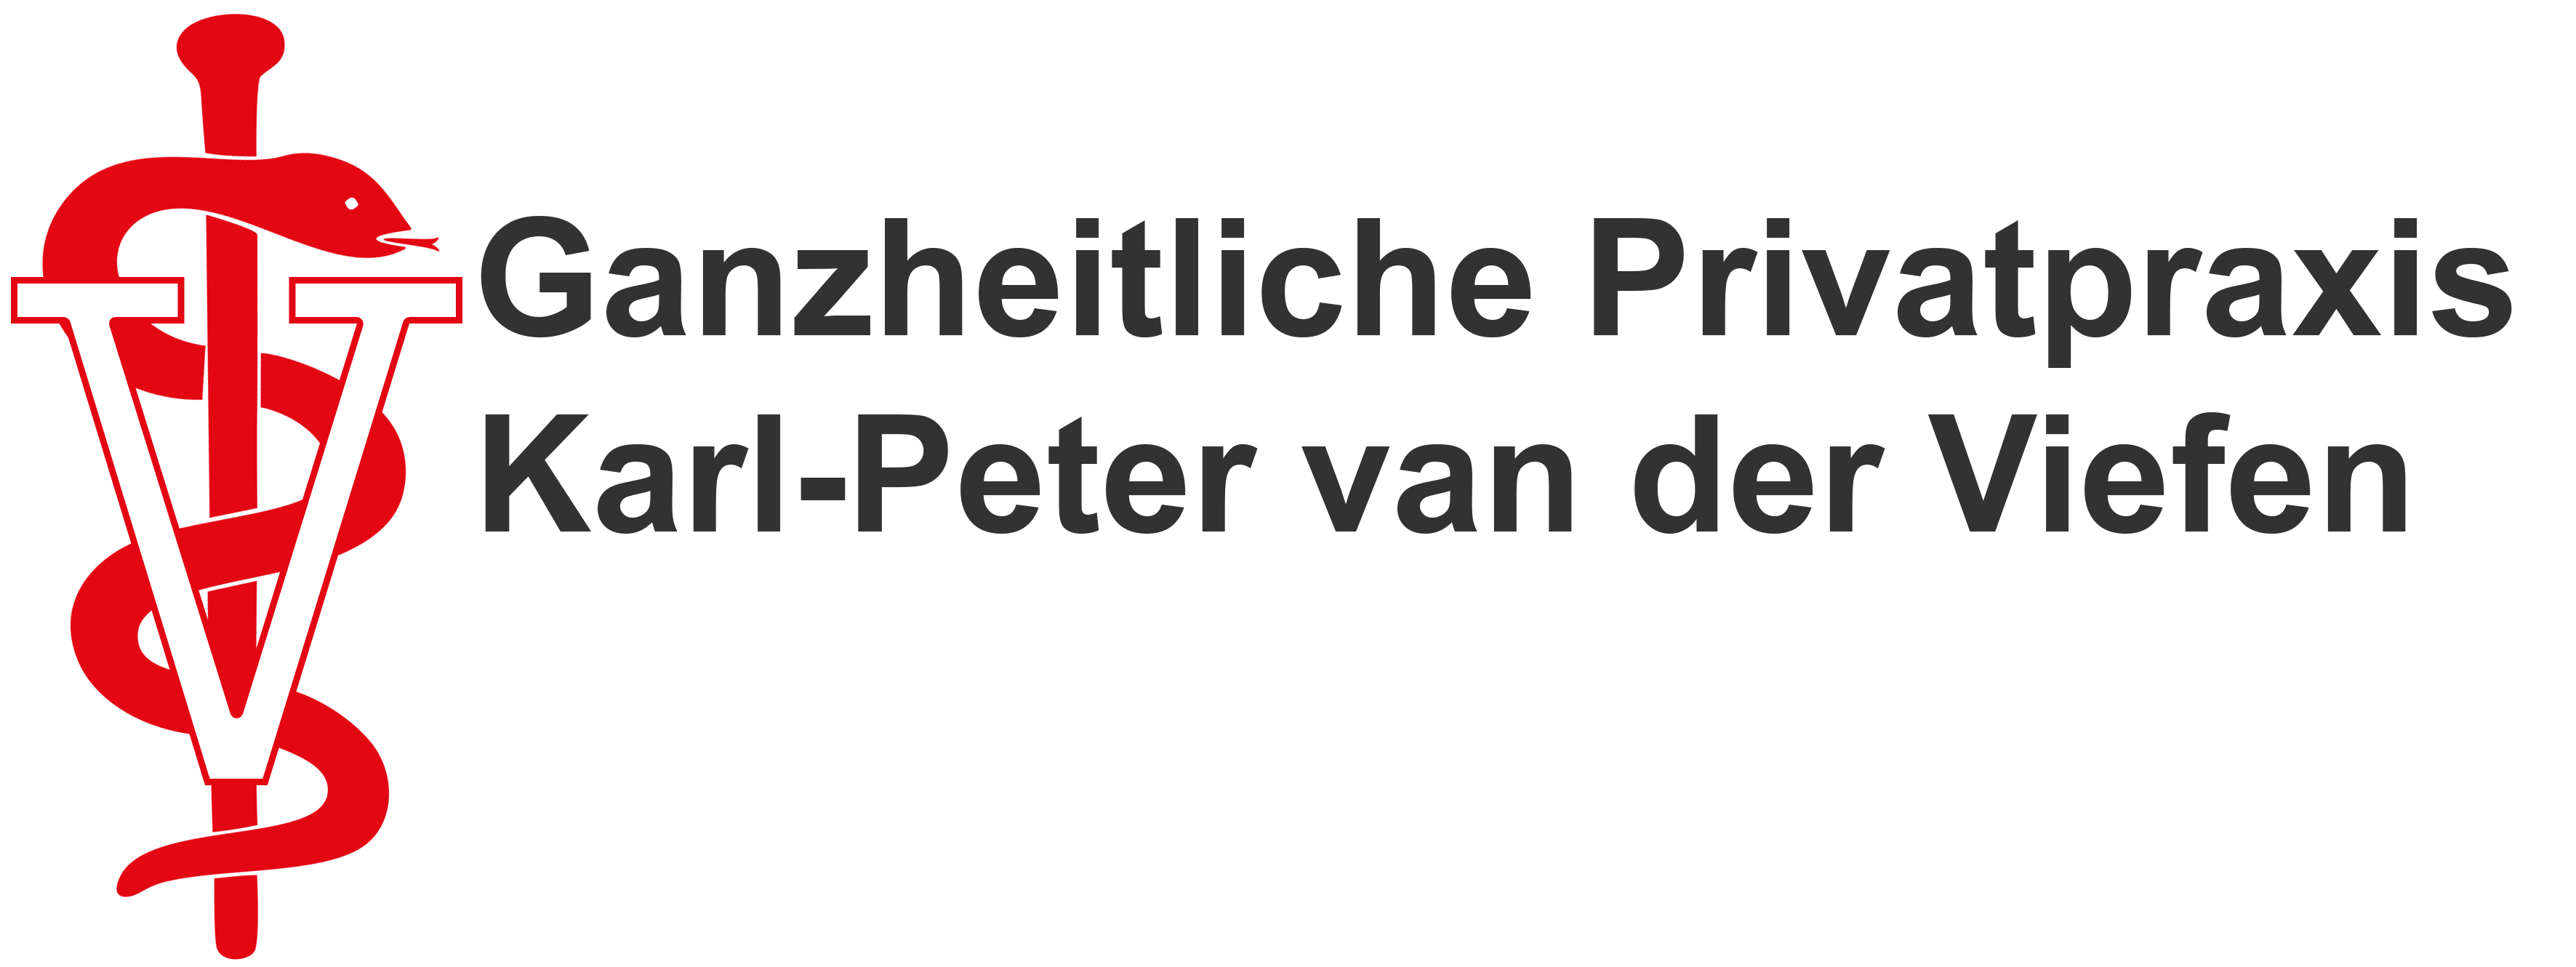 Osteopathie Praxis, Karl-Peter van der Viefen